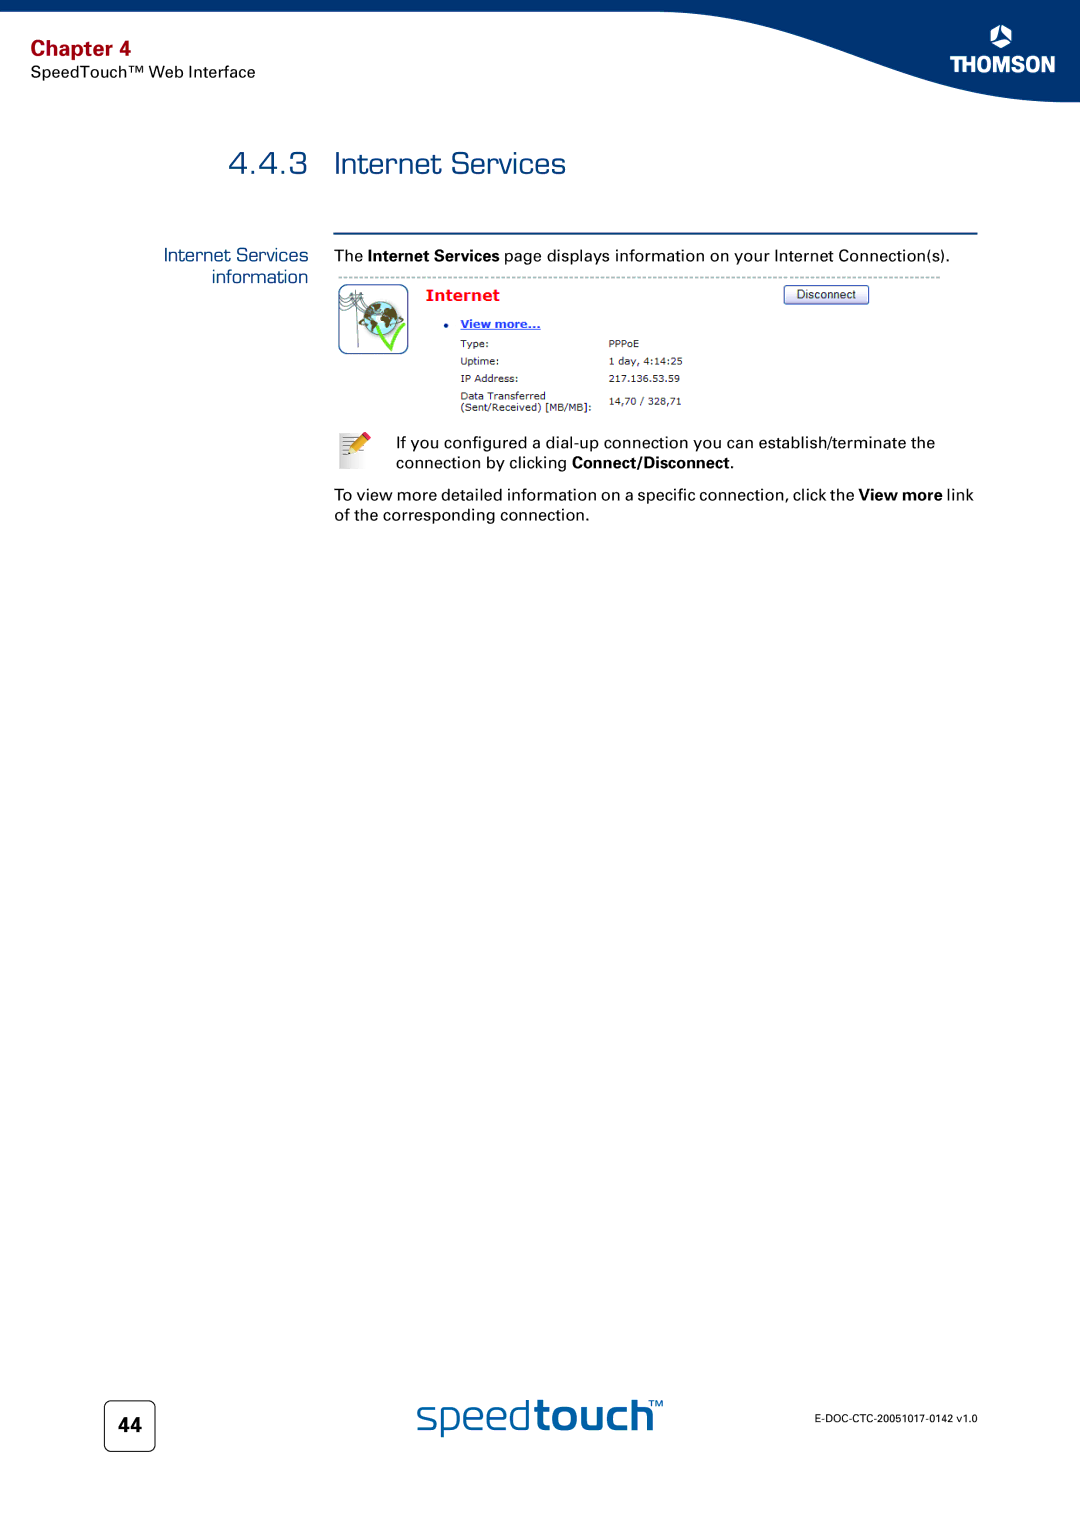 Technicolor - Thomson 536(v6) manual Internet Services 